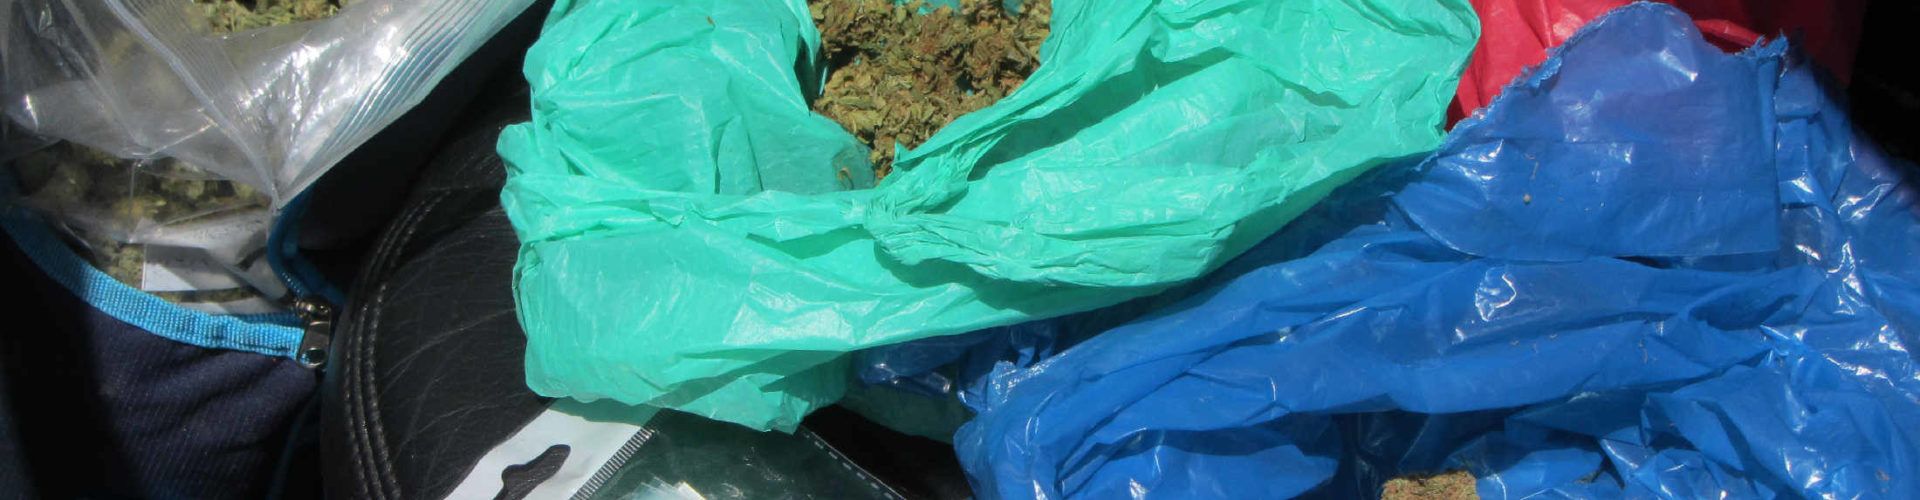 La Guardia Civil intercepta un vehículo que transportaba 2.000 gramos de cogollos de marihuana